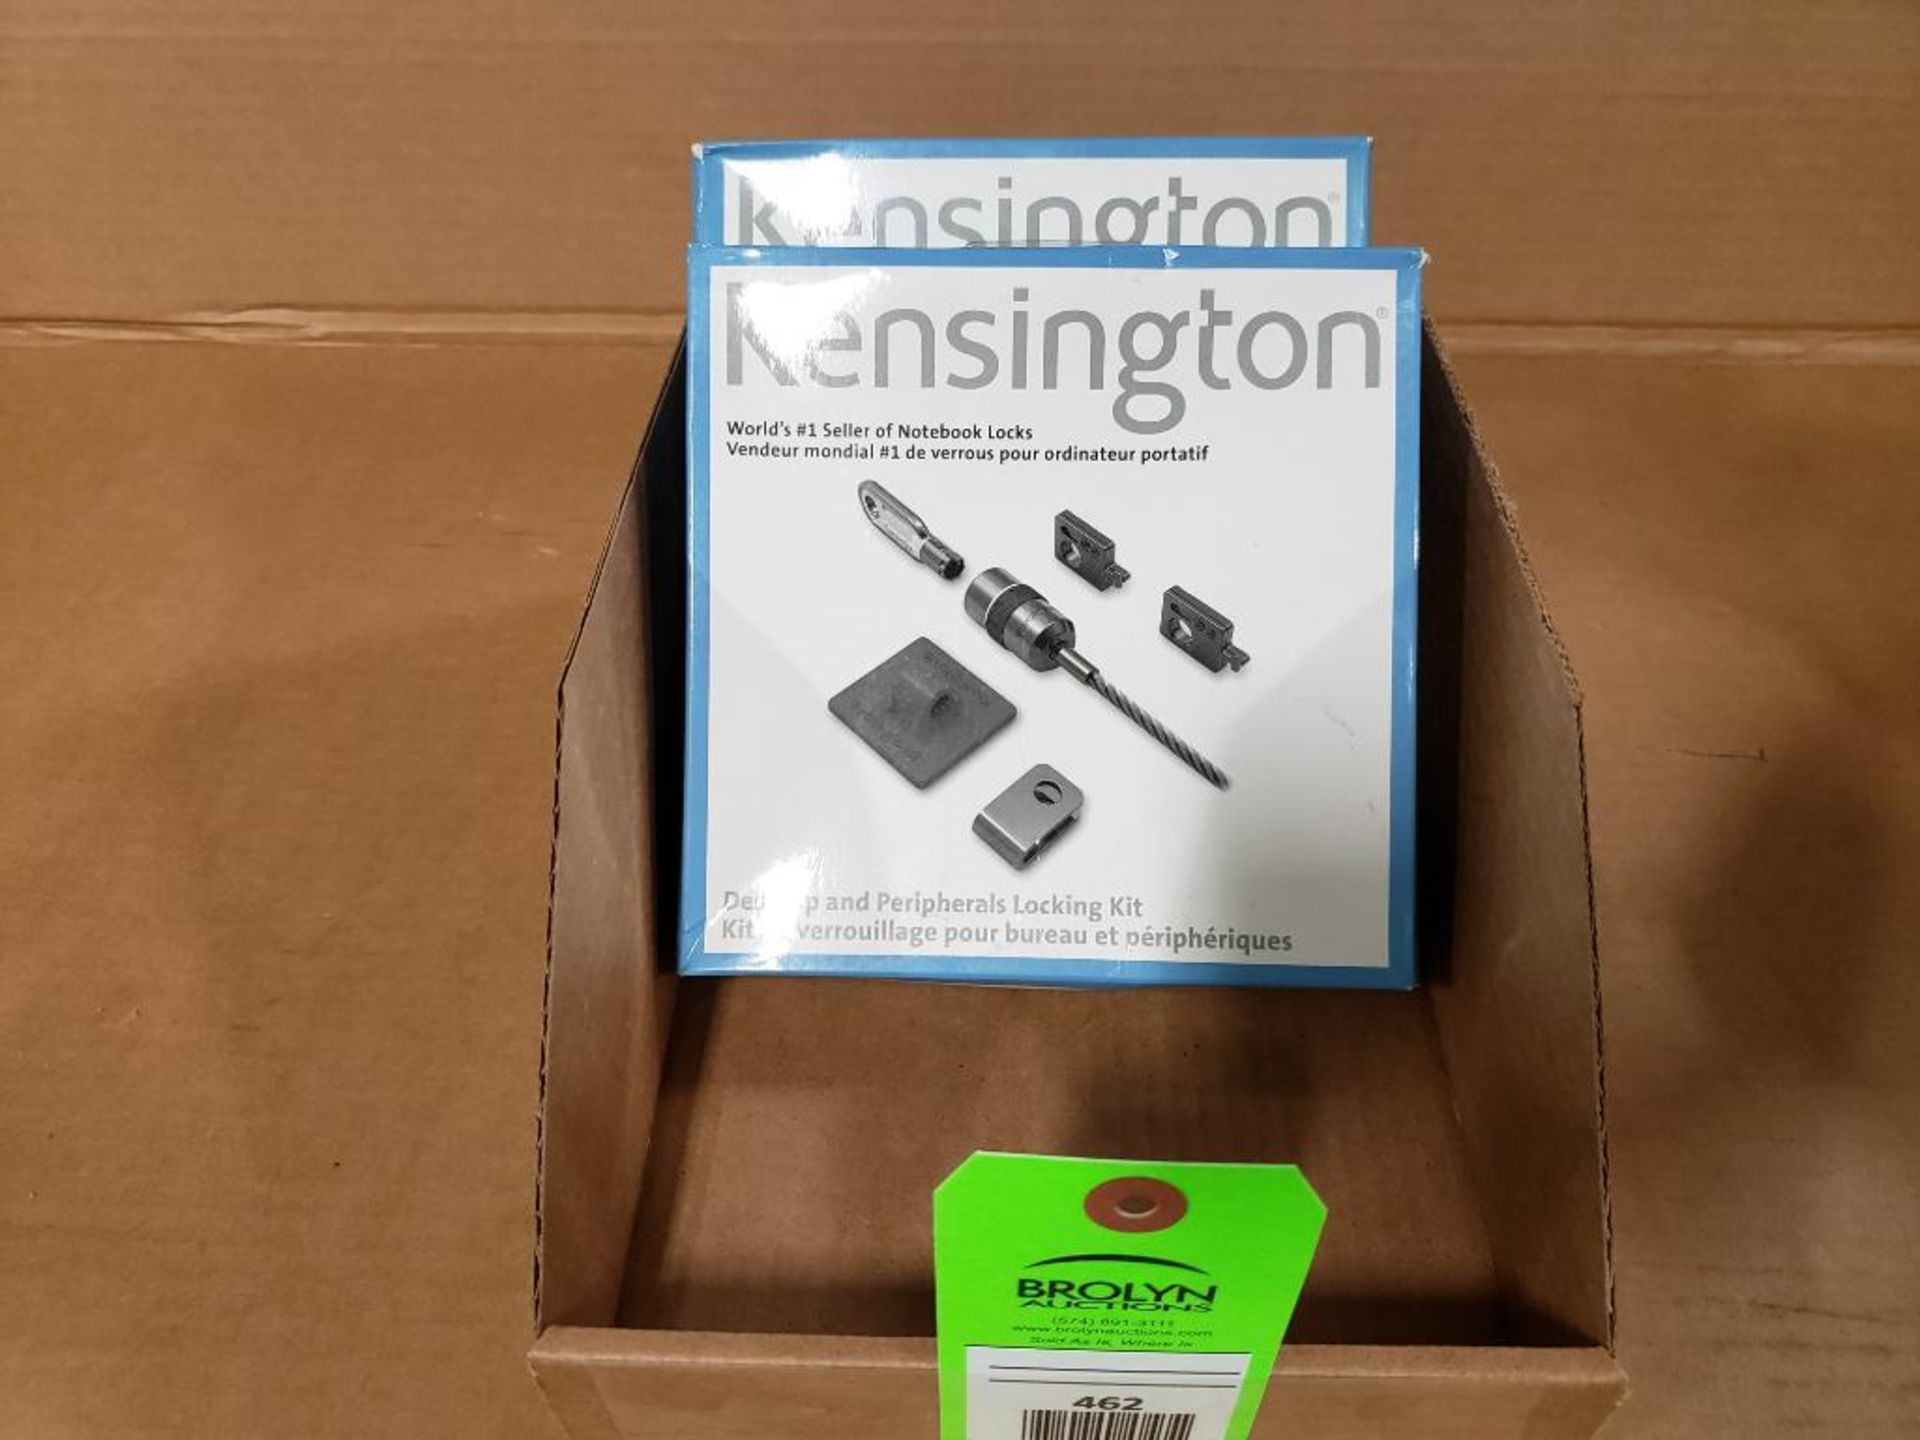 Qty 2 - Kensington notebook lock kits. New in box.